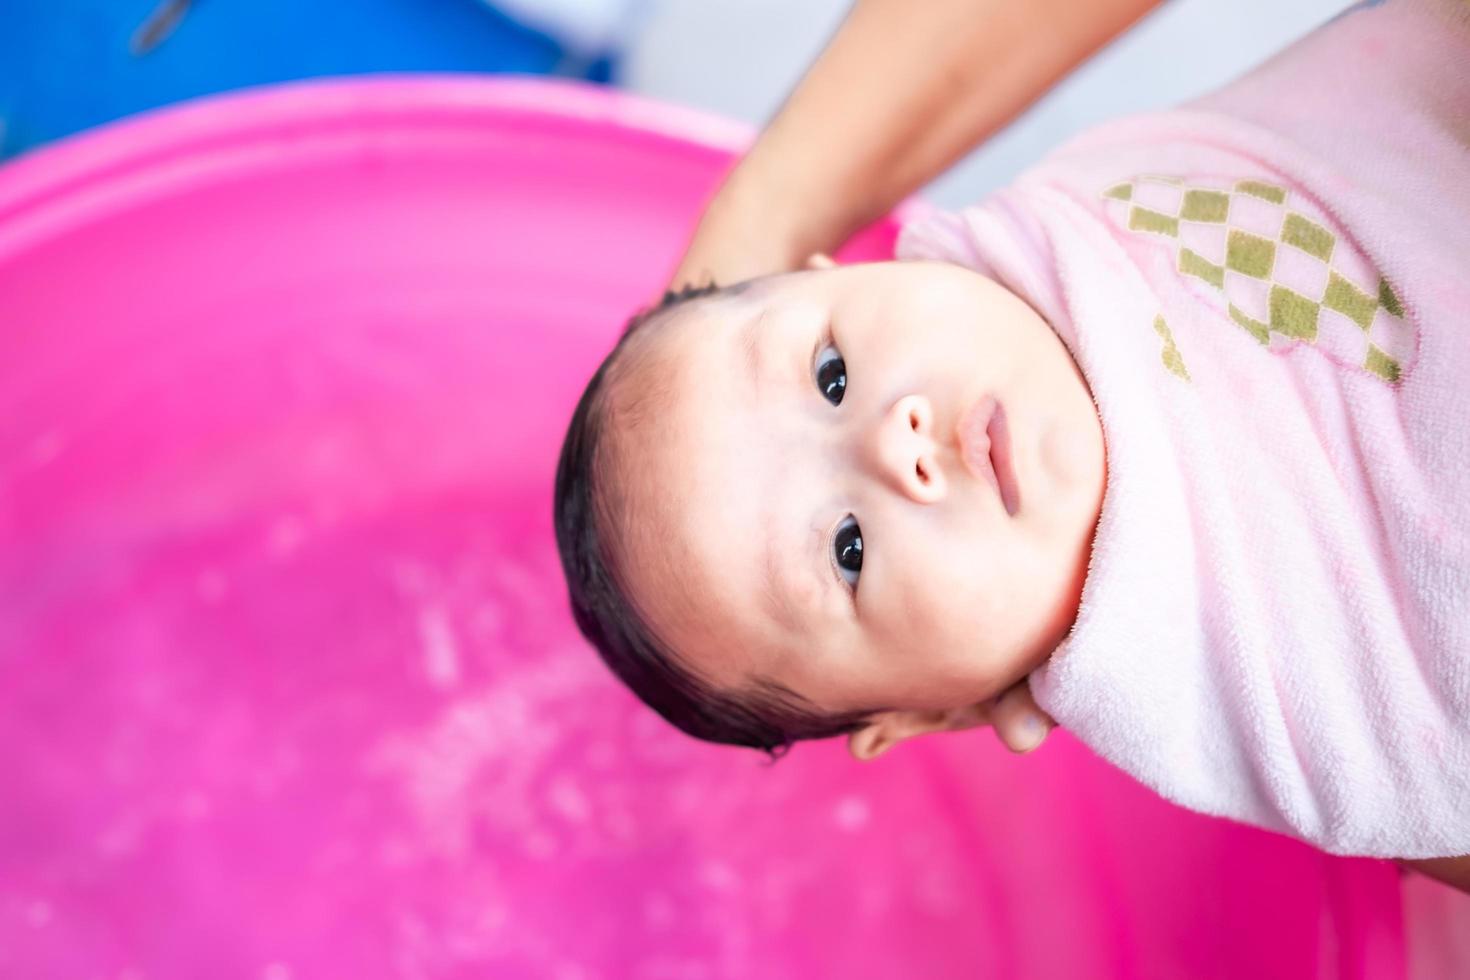 maman asiatique douche bébé pour nettoyer la saleté donner à l'enfant dans le bain récipient pour la propreté mode de vie famille entre mère et enfant utilisé pour la douche de bébé produits crème shampooings lotions et produits de soin pour bébé photo